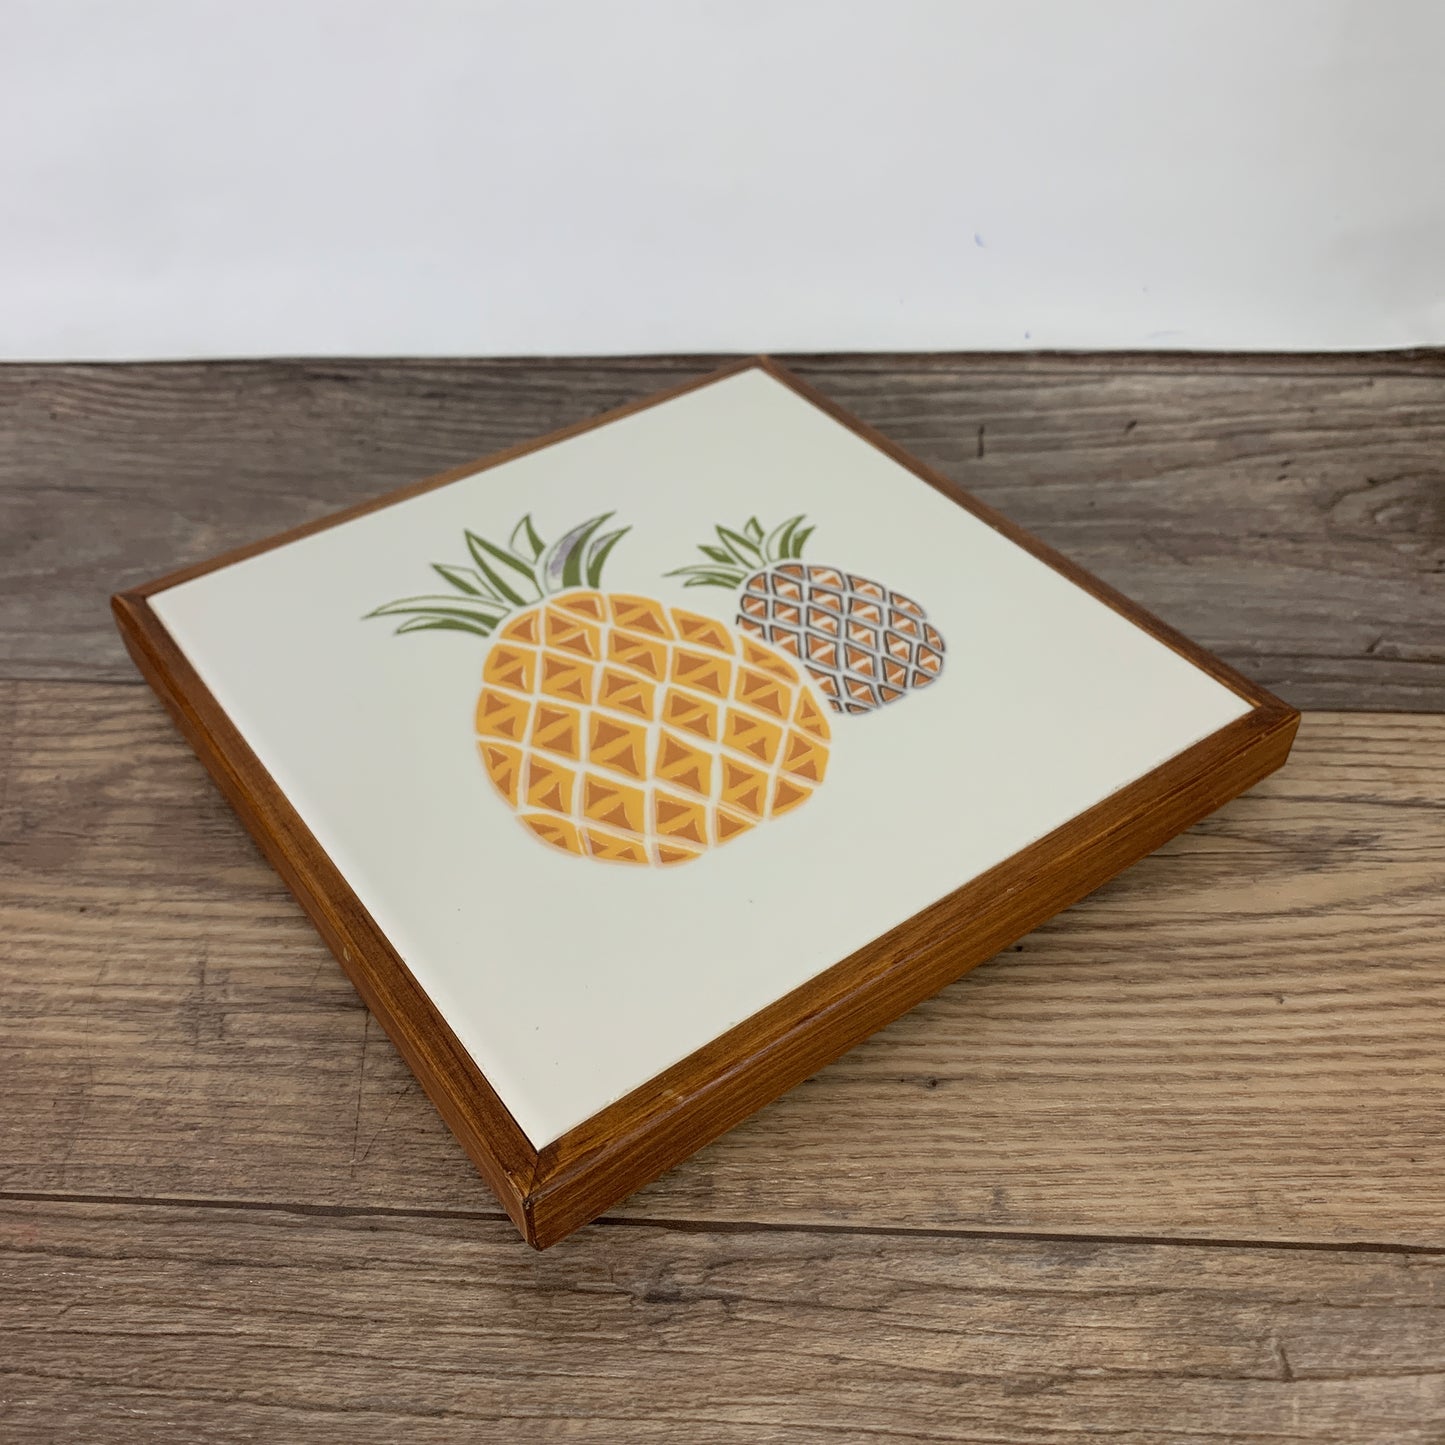 Vintage Ceramic Tile Trivet with Pineapples, Wood Frame Hot Plate